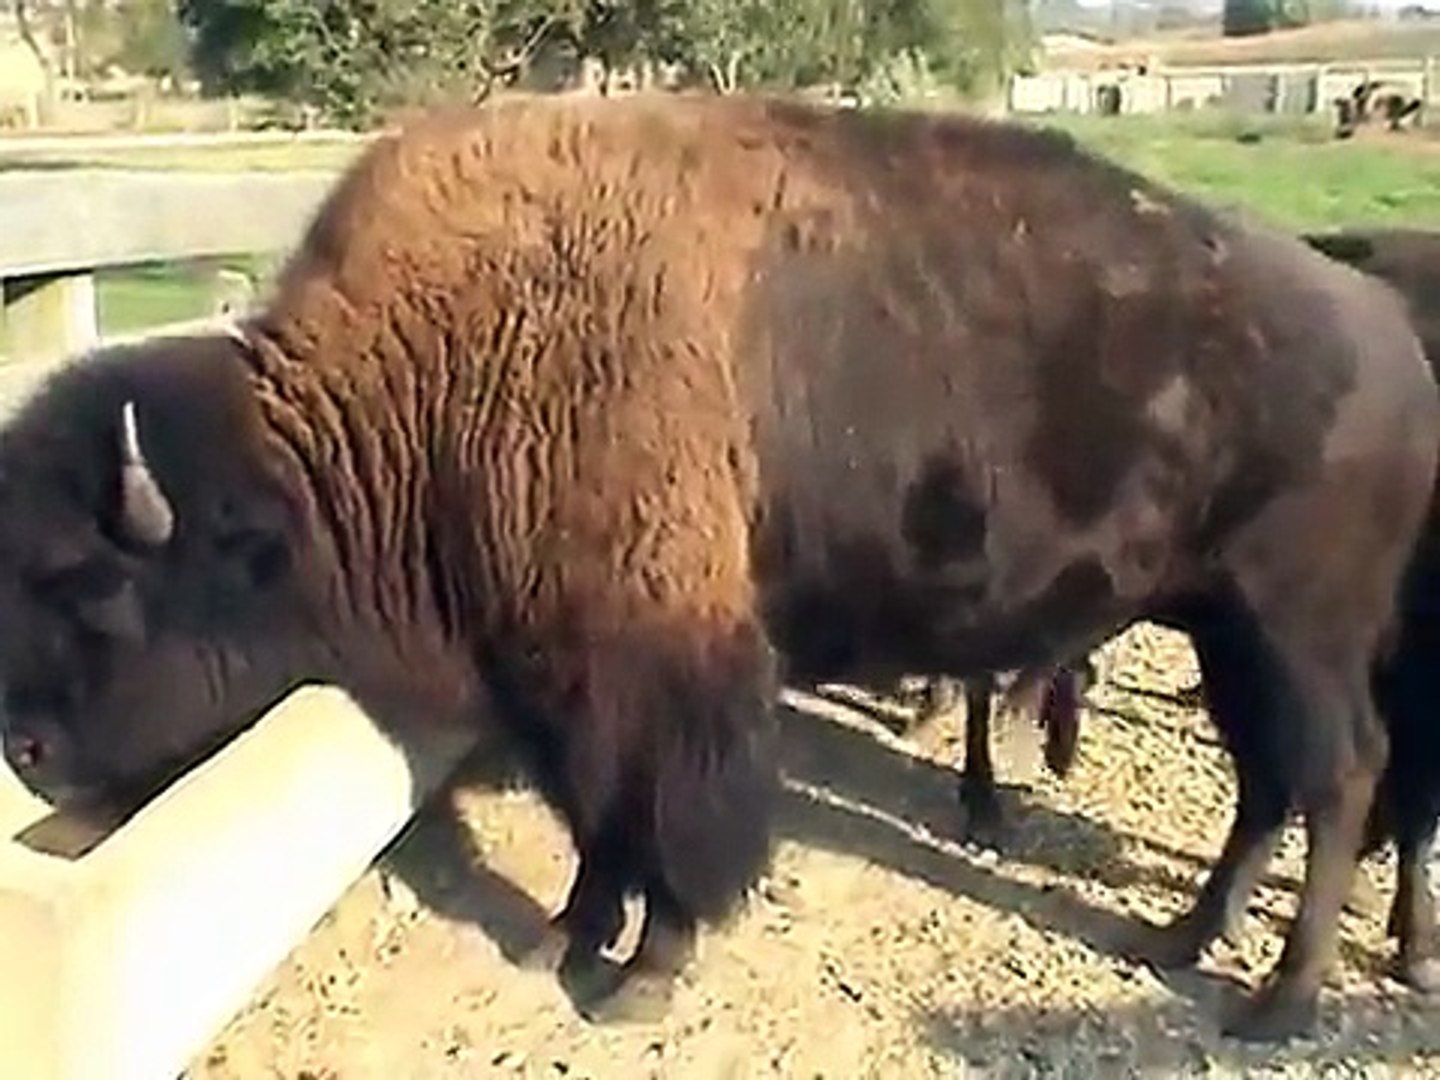 The Buffalo at Buffalo Bill Cody Homestead